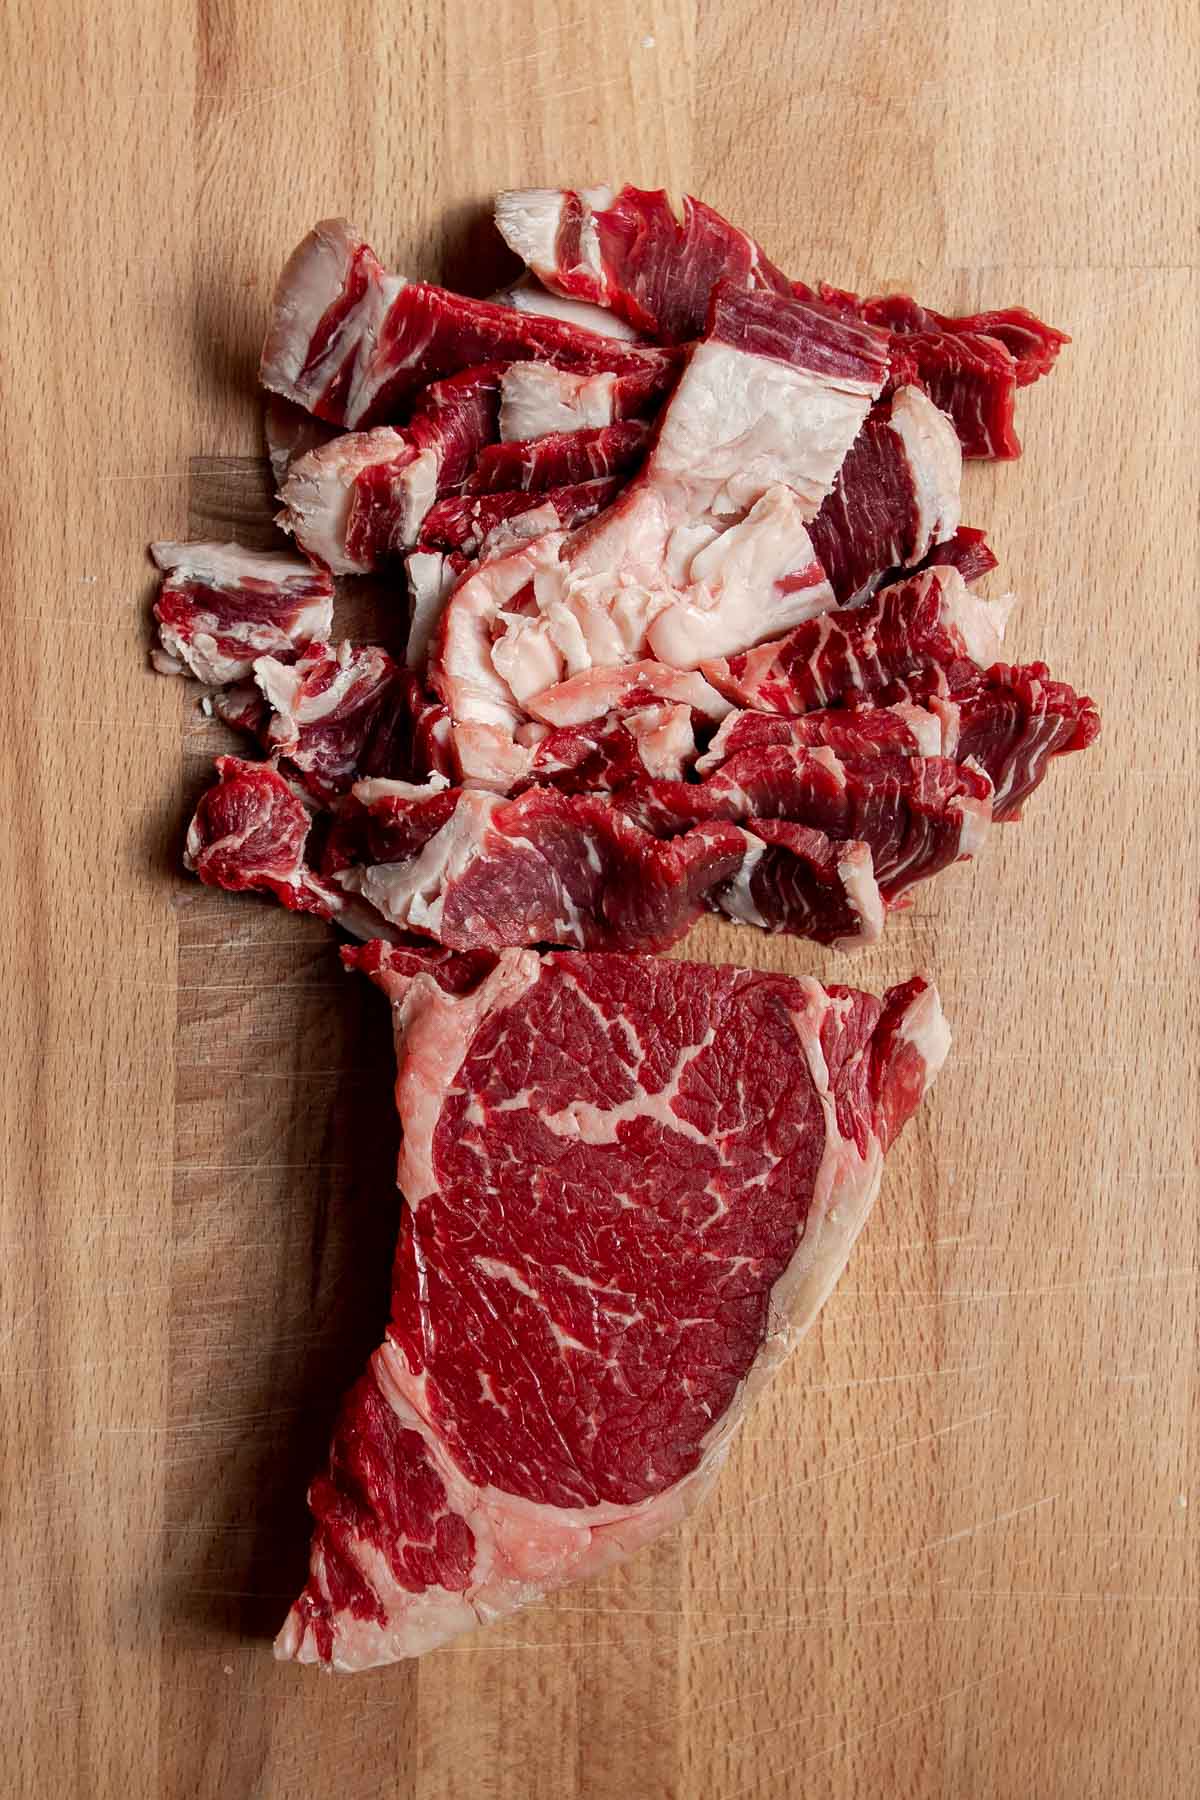 Raw ribeye steak thinly sliced on a cutting board.